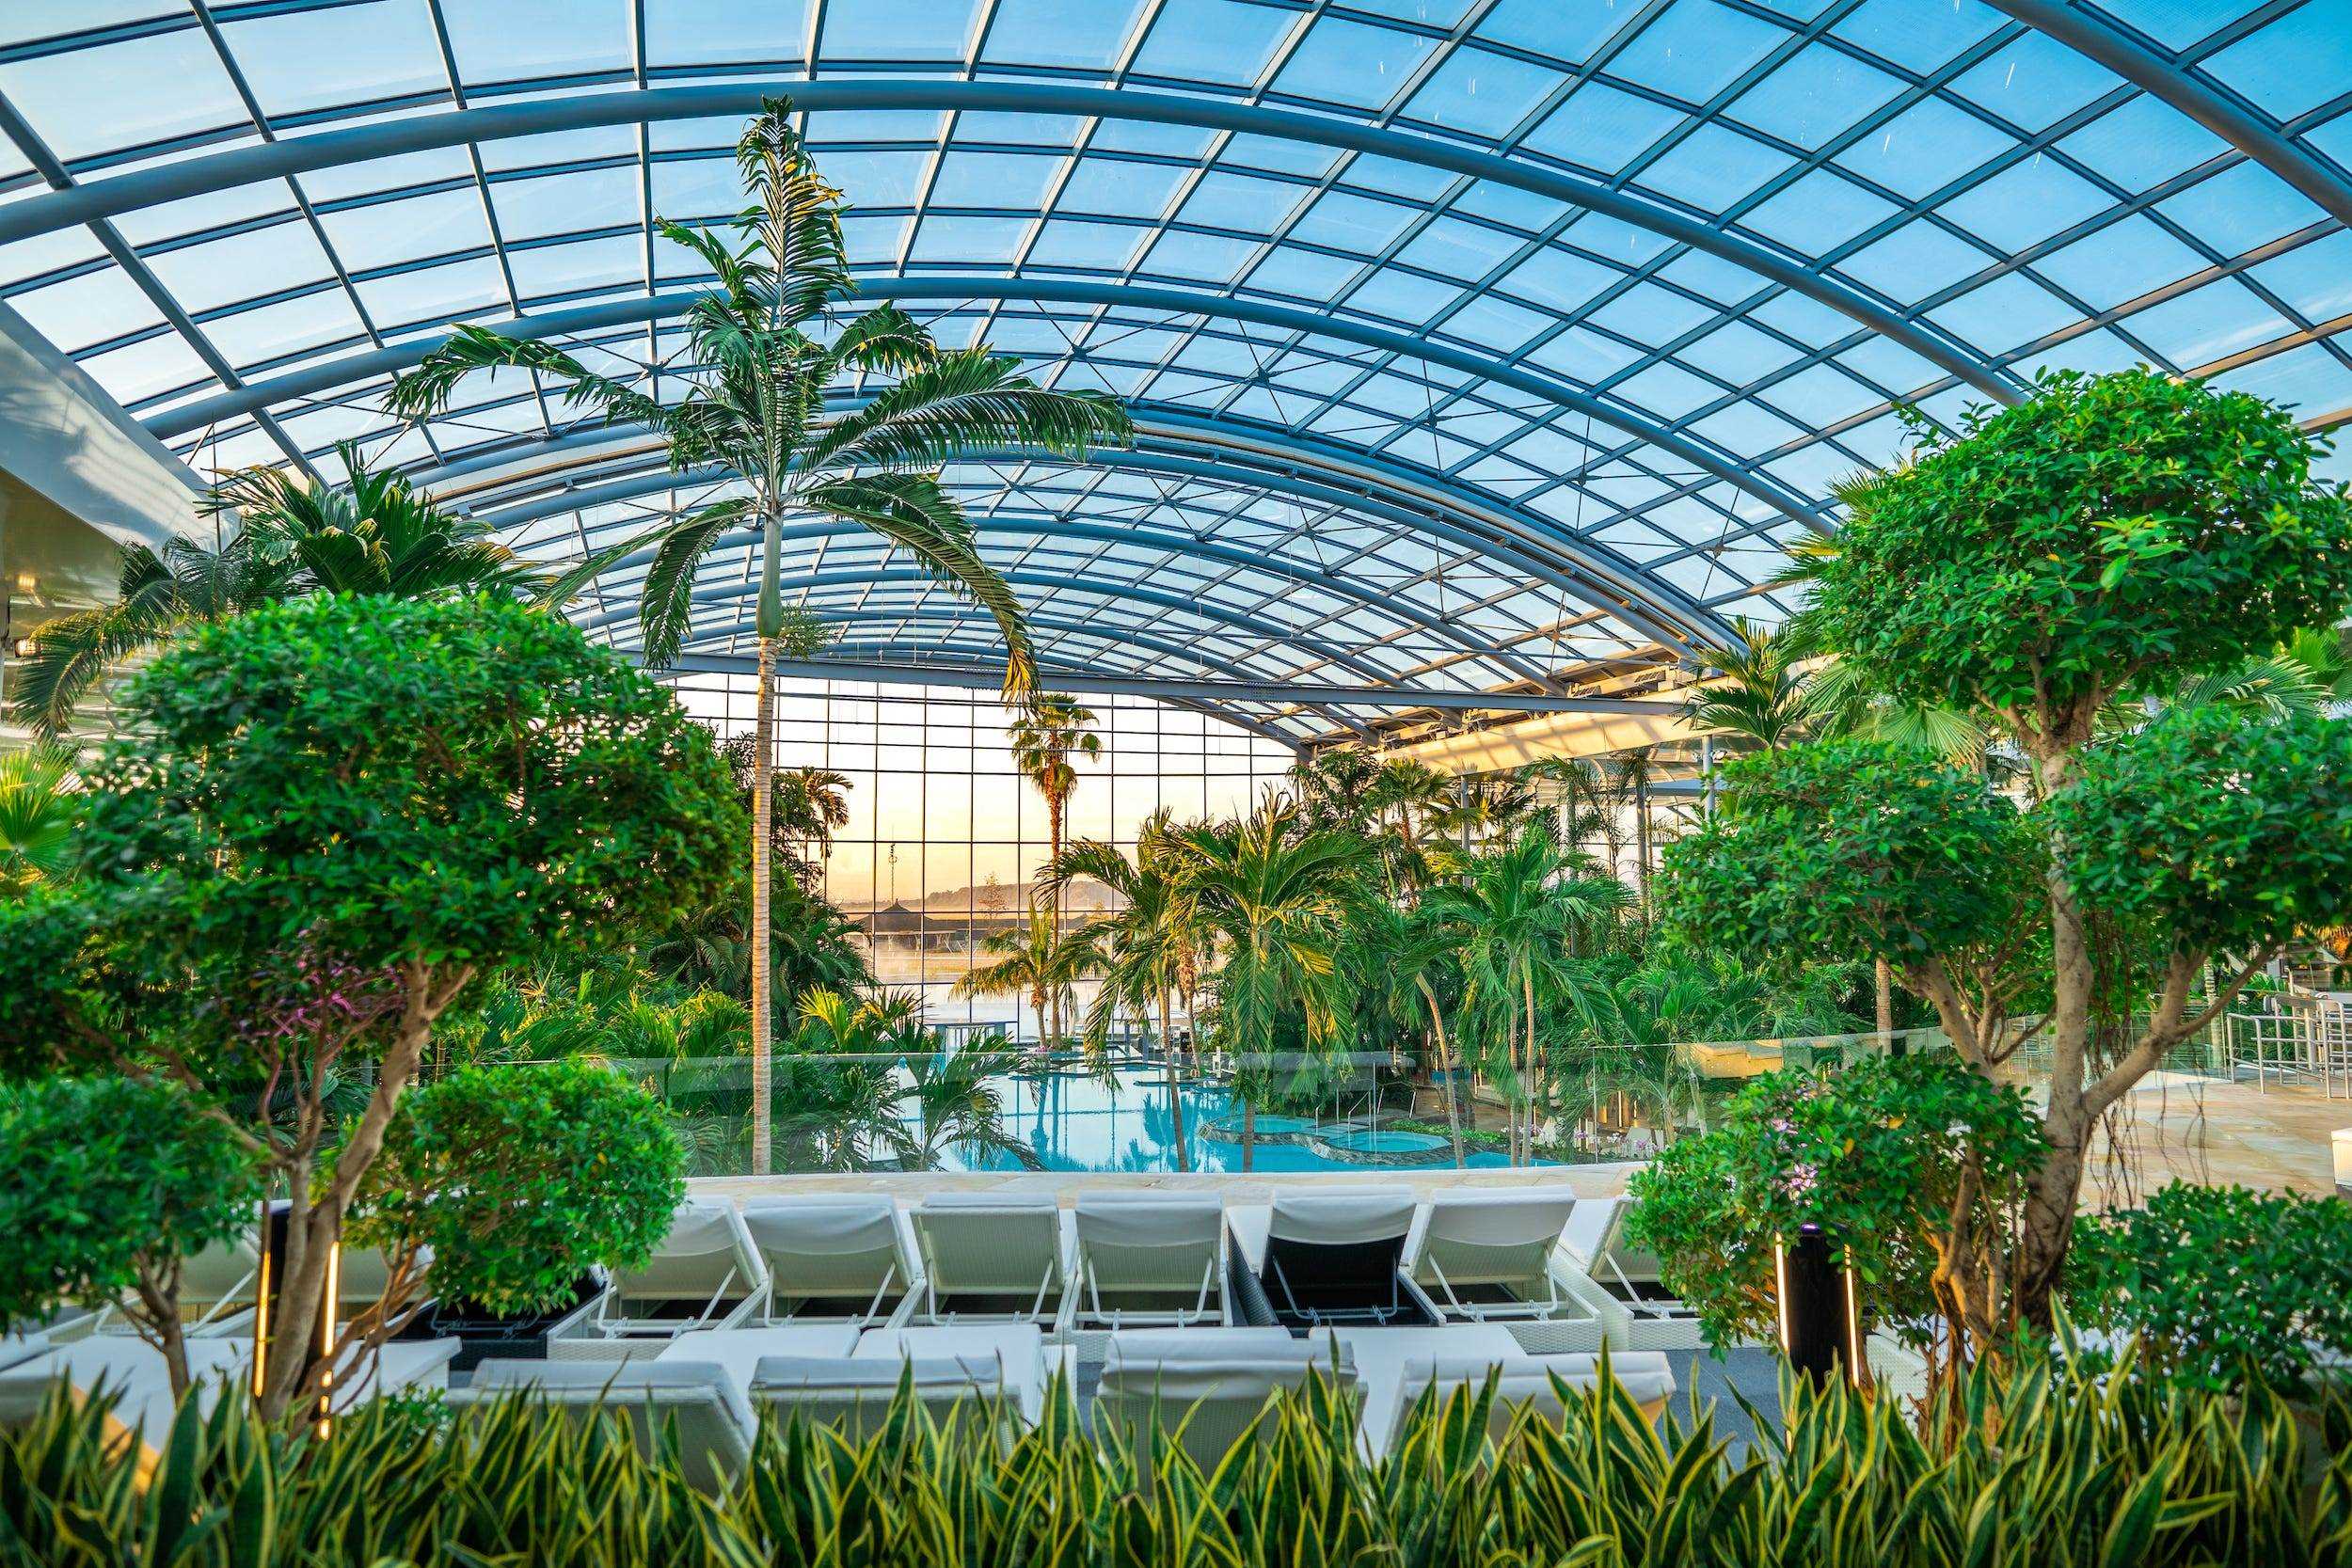 Lounge-Sitzplätze an einem Pool neben Pflanzen unter einer transparenten Kuppel